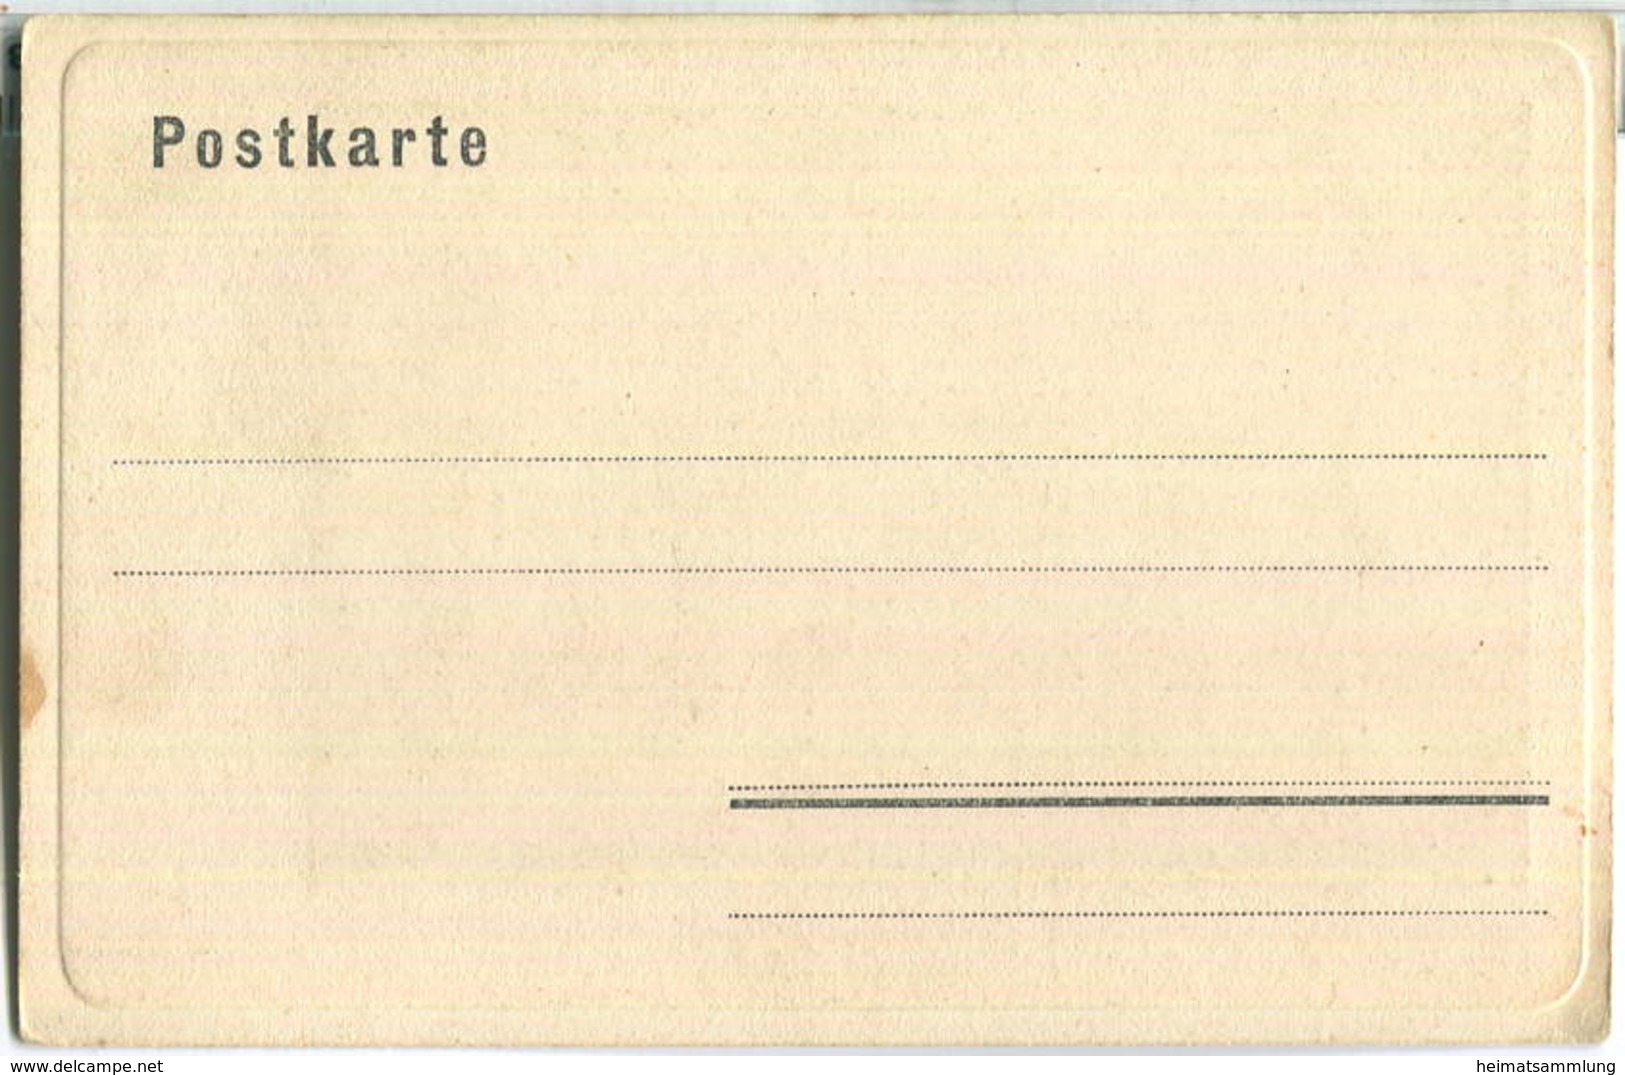 Bad Berka An Der Ilm - Postkarte Um 1900 - Künstlerkarte Ca. 50 Jahre Alte Gouache-Handmalerei Auf Original-Steindruck - Bad Berka